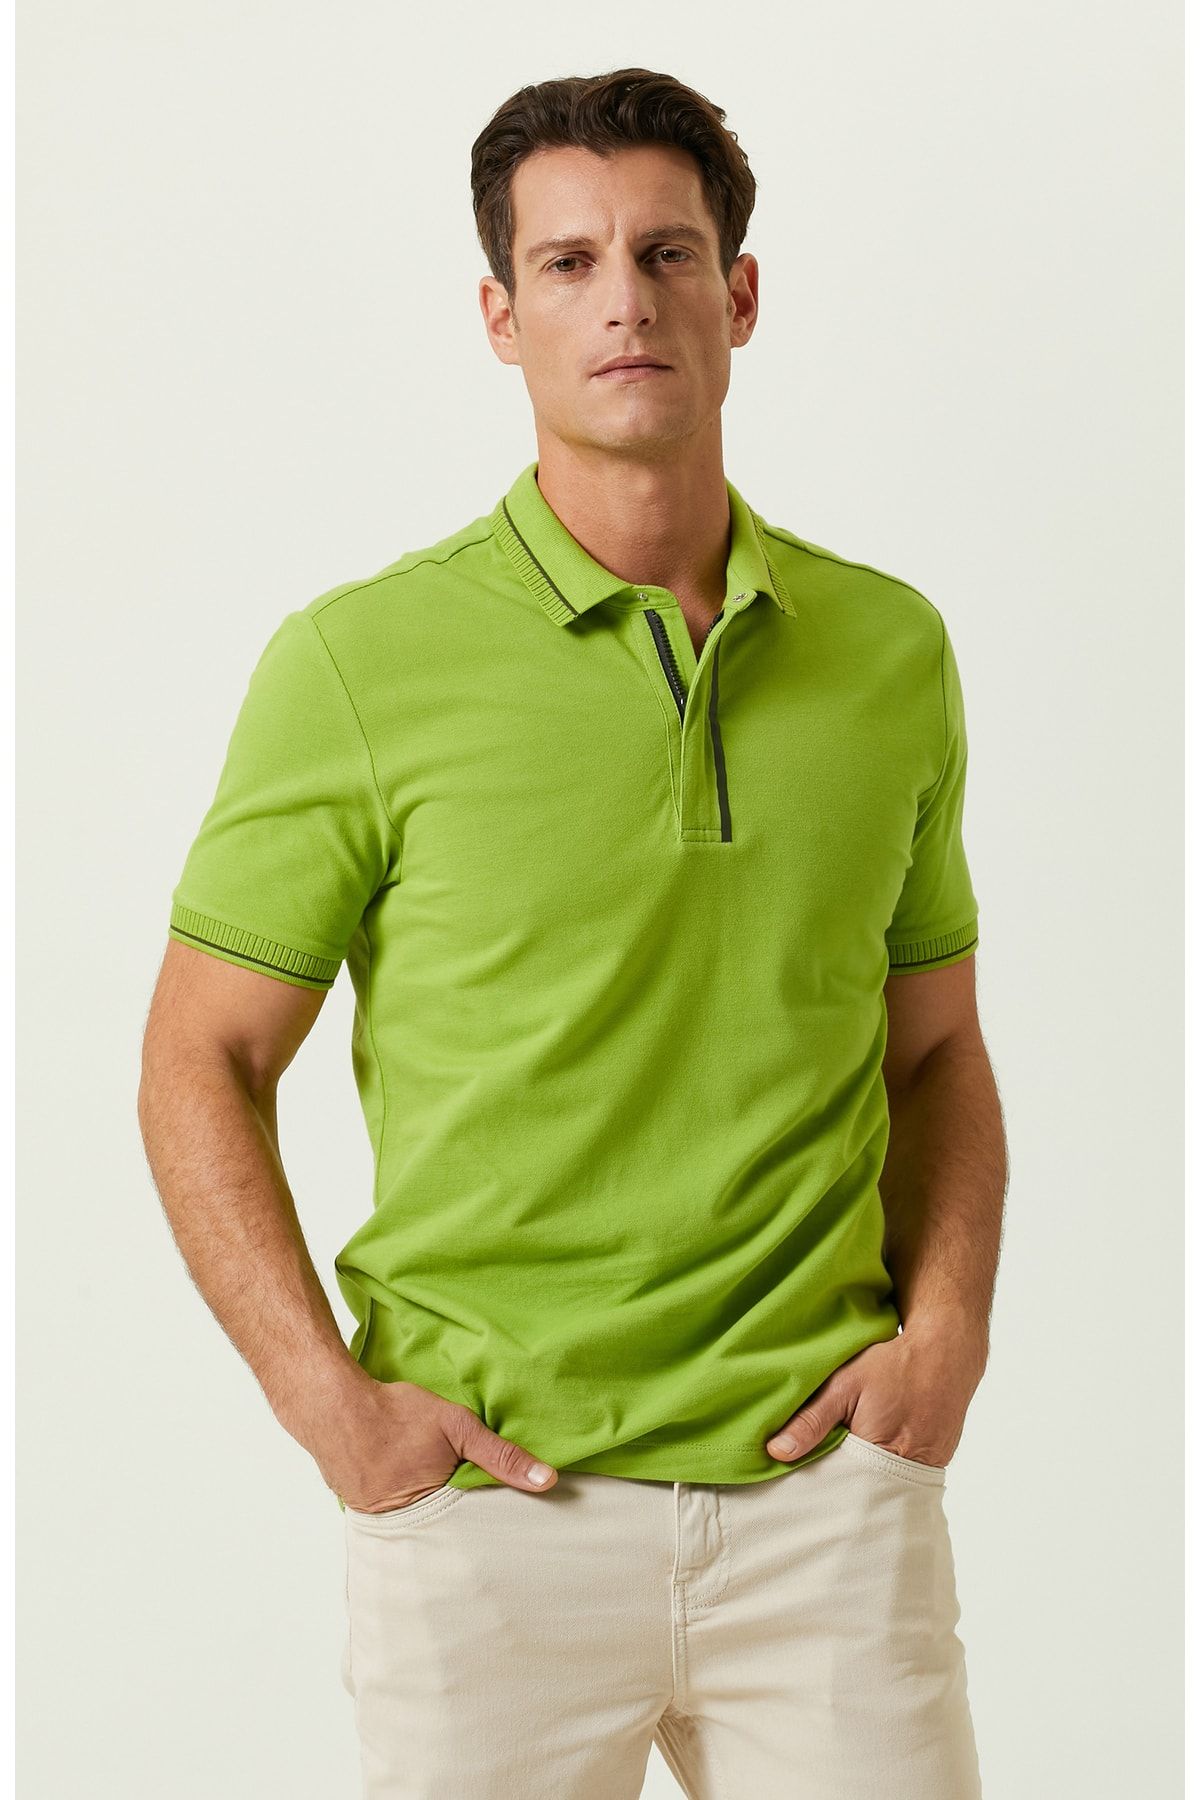 Network Fıstık Yeşili Fermuarlı Polo Yaka T-shirt